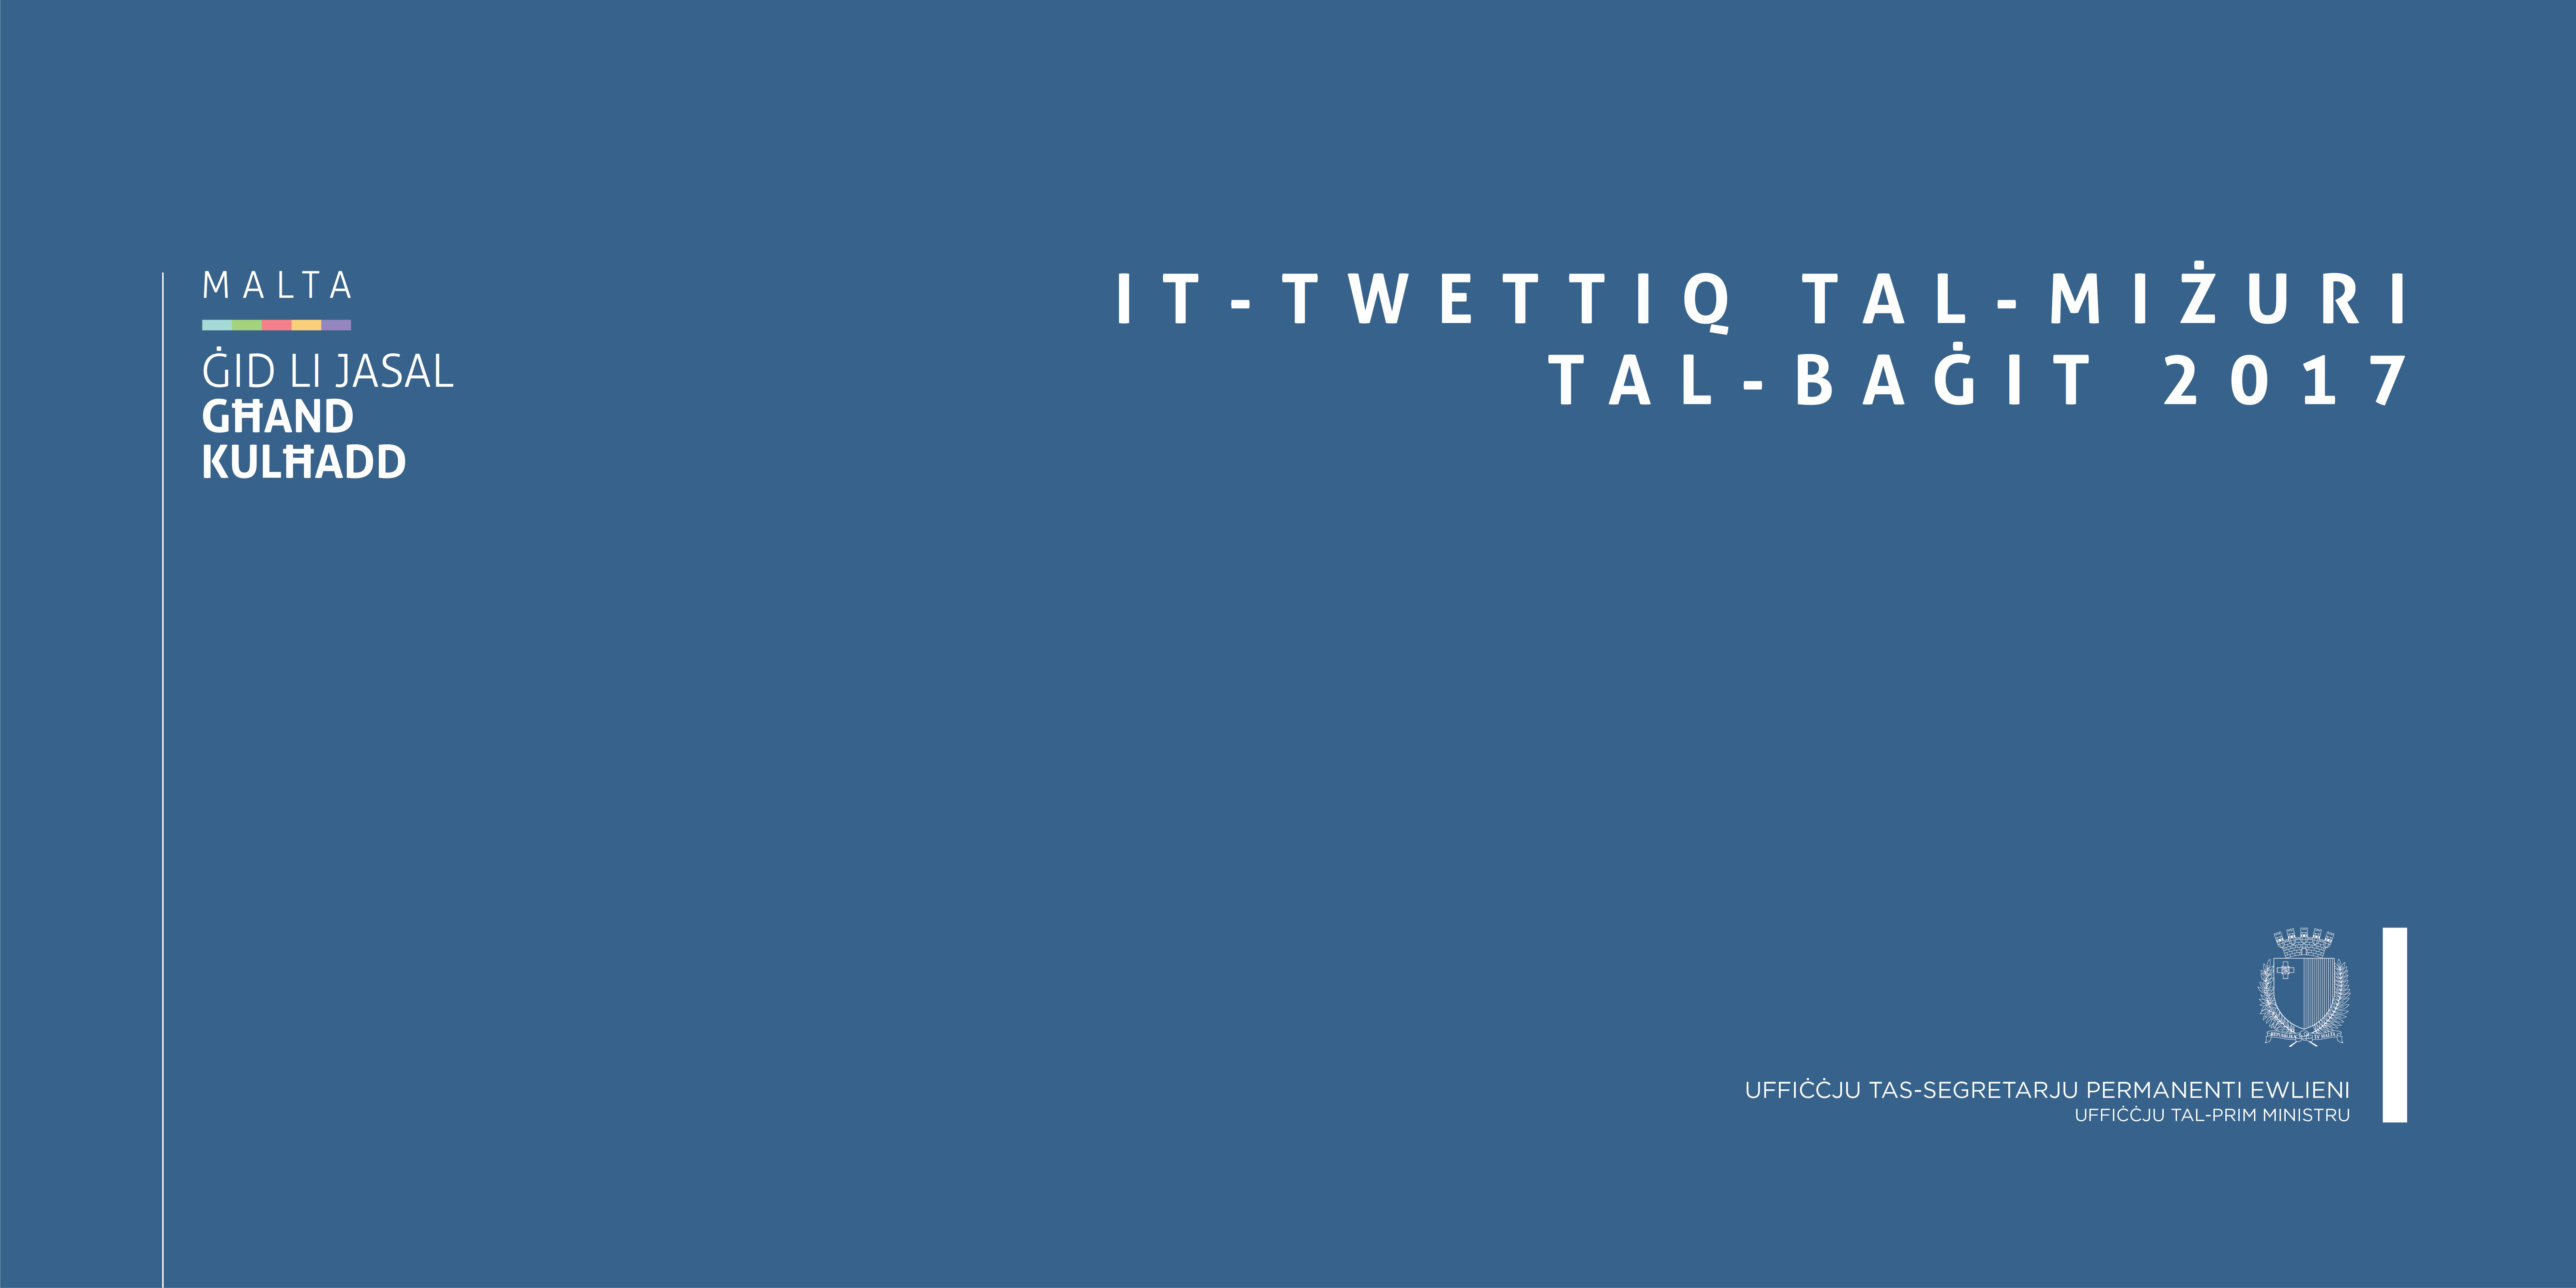 Jitwettqu 70% tal-miżuri tal-Baġit 2017